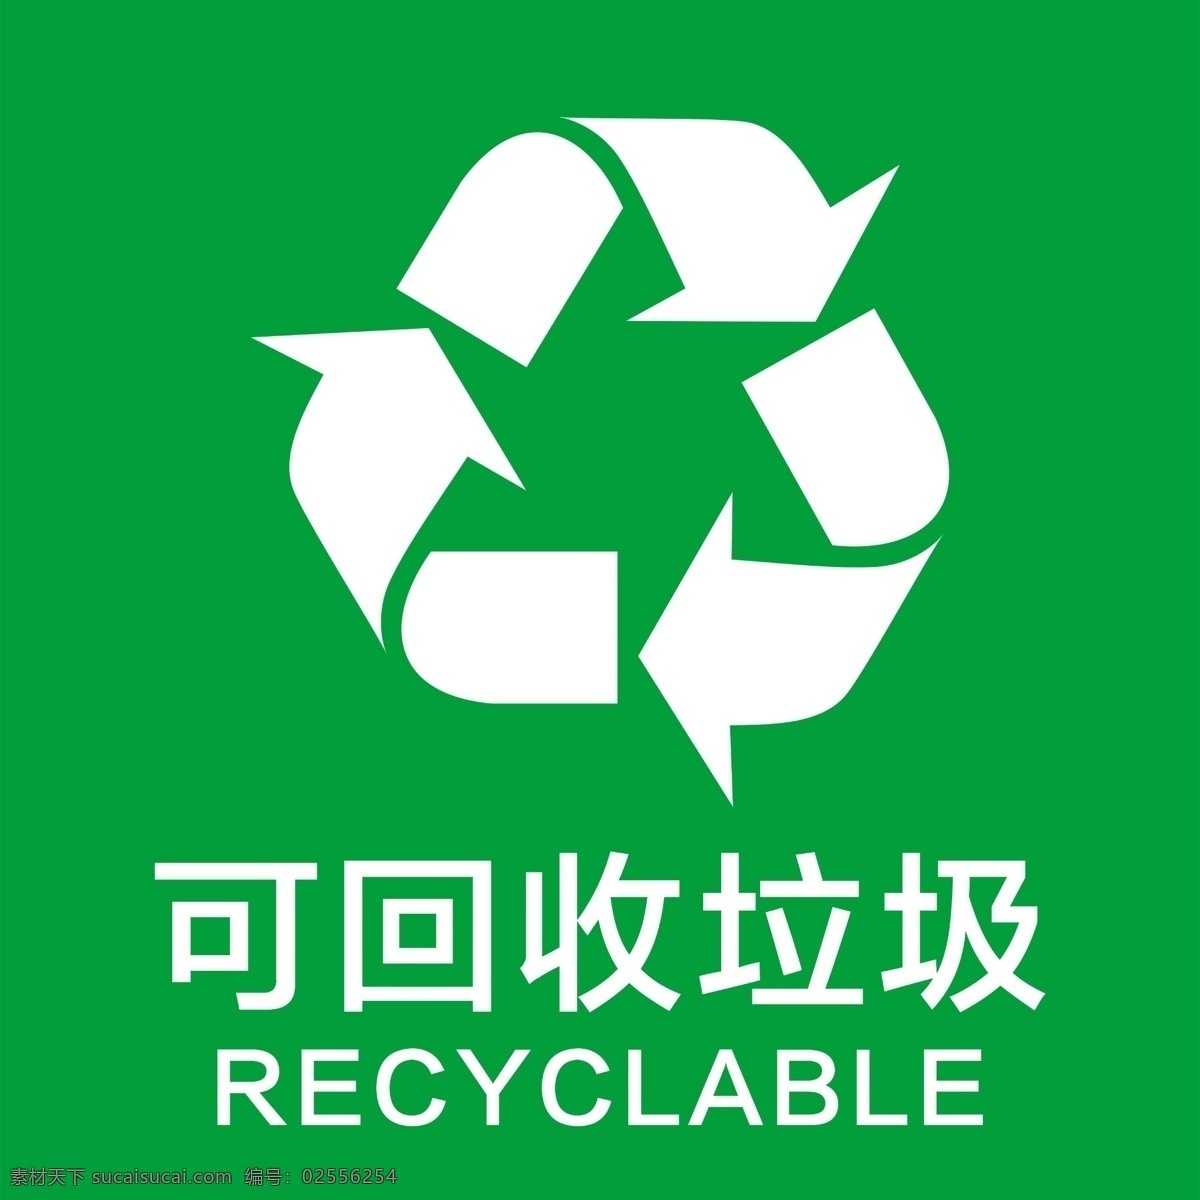 垃圾桶标识 可回收垃圾 有害垃圾 其他垃圾 易腐垃圾 标识牌 室内广告设计